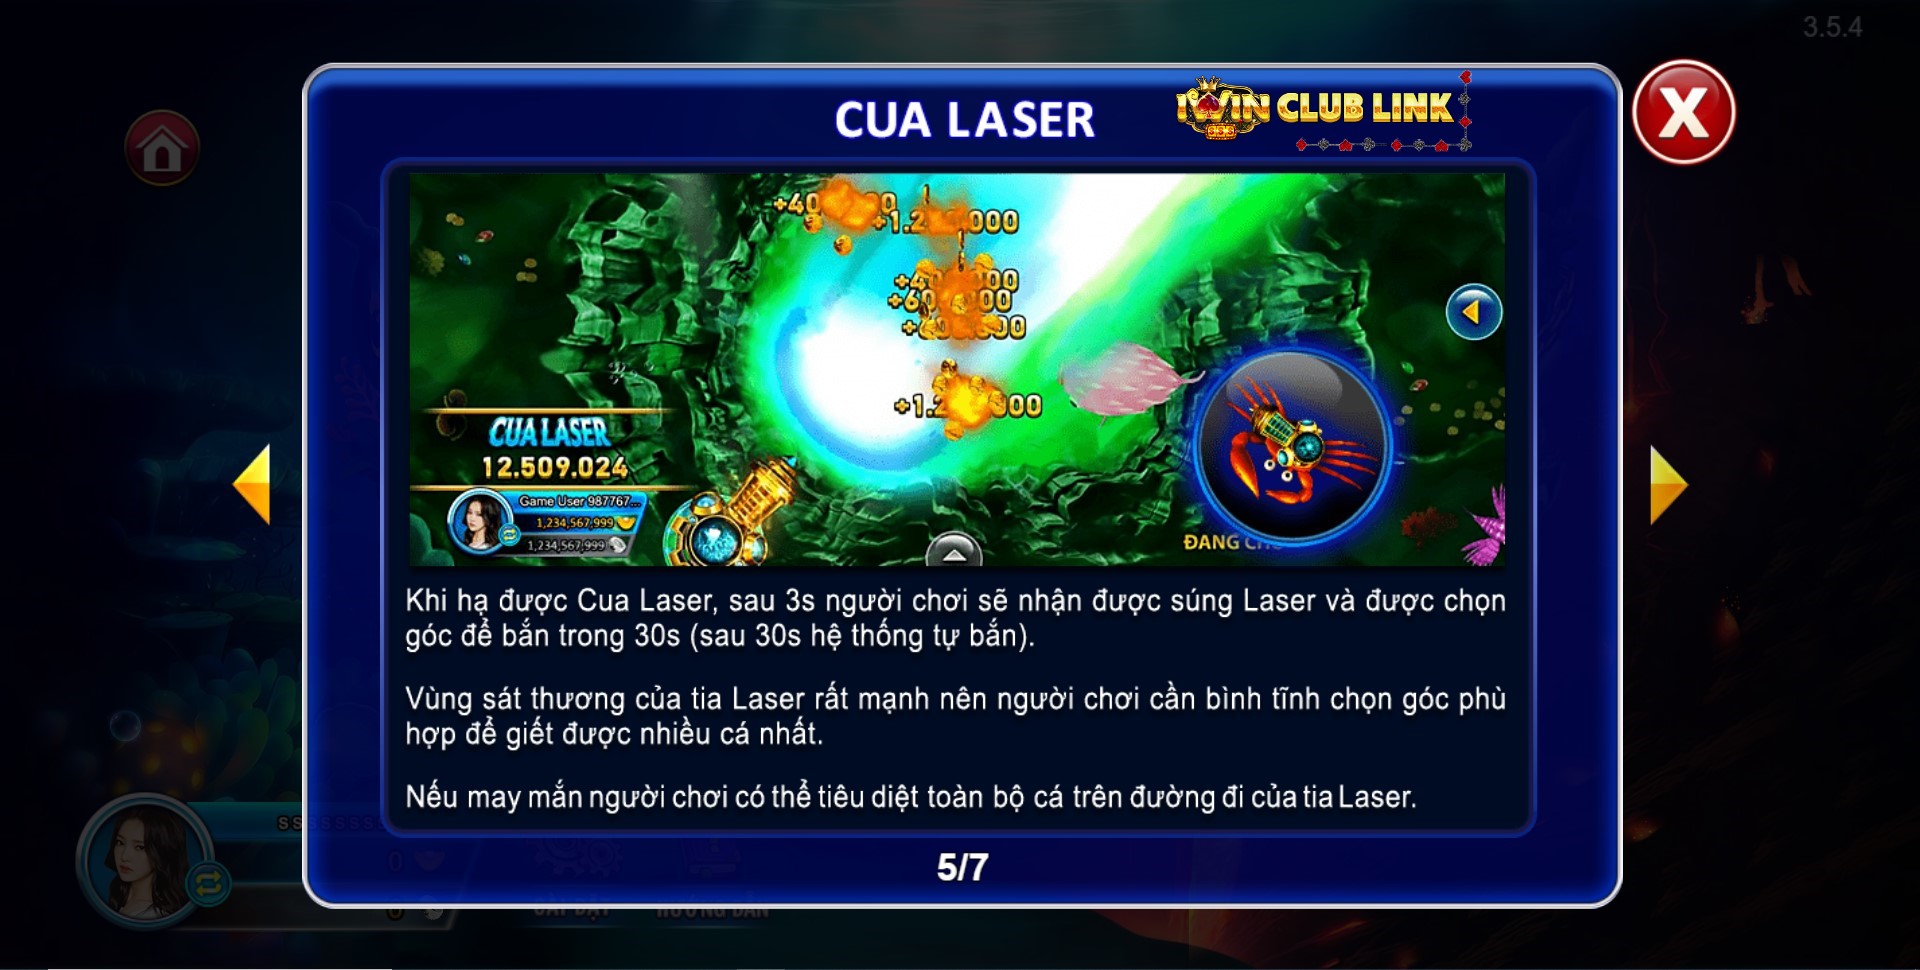 cua laser game bắn cá bá chủ đại dương iwin club